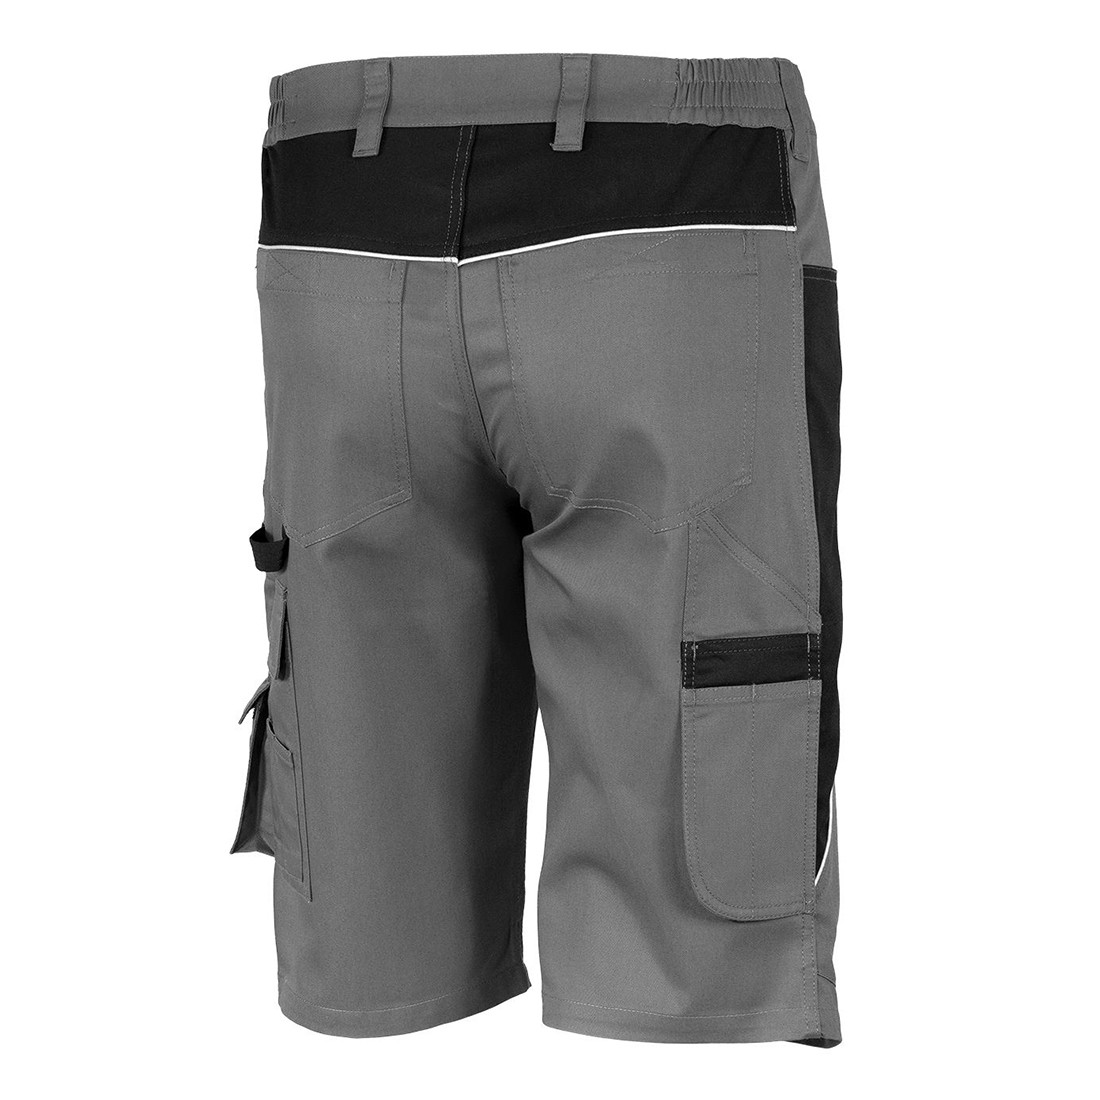 Pantalon court - Les vêtements de protection